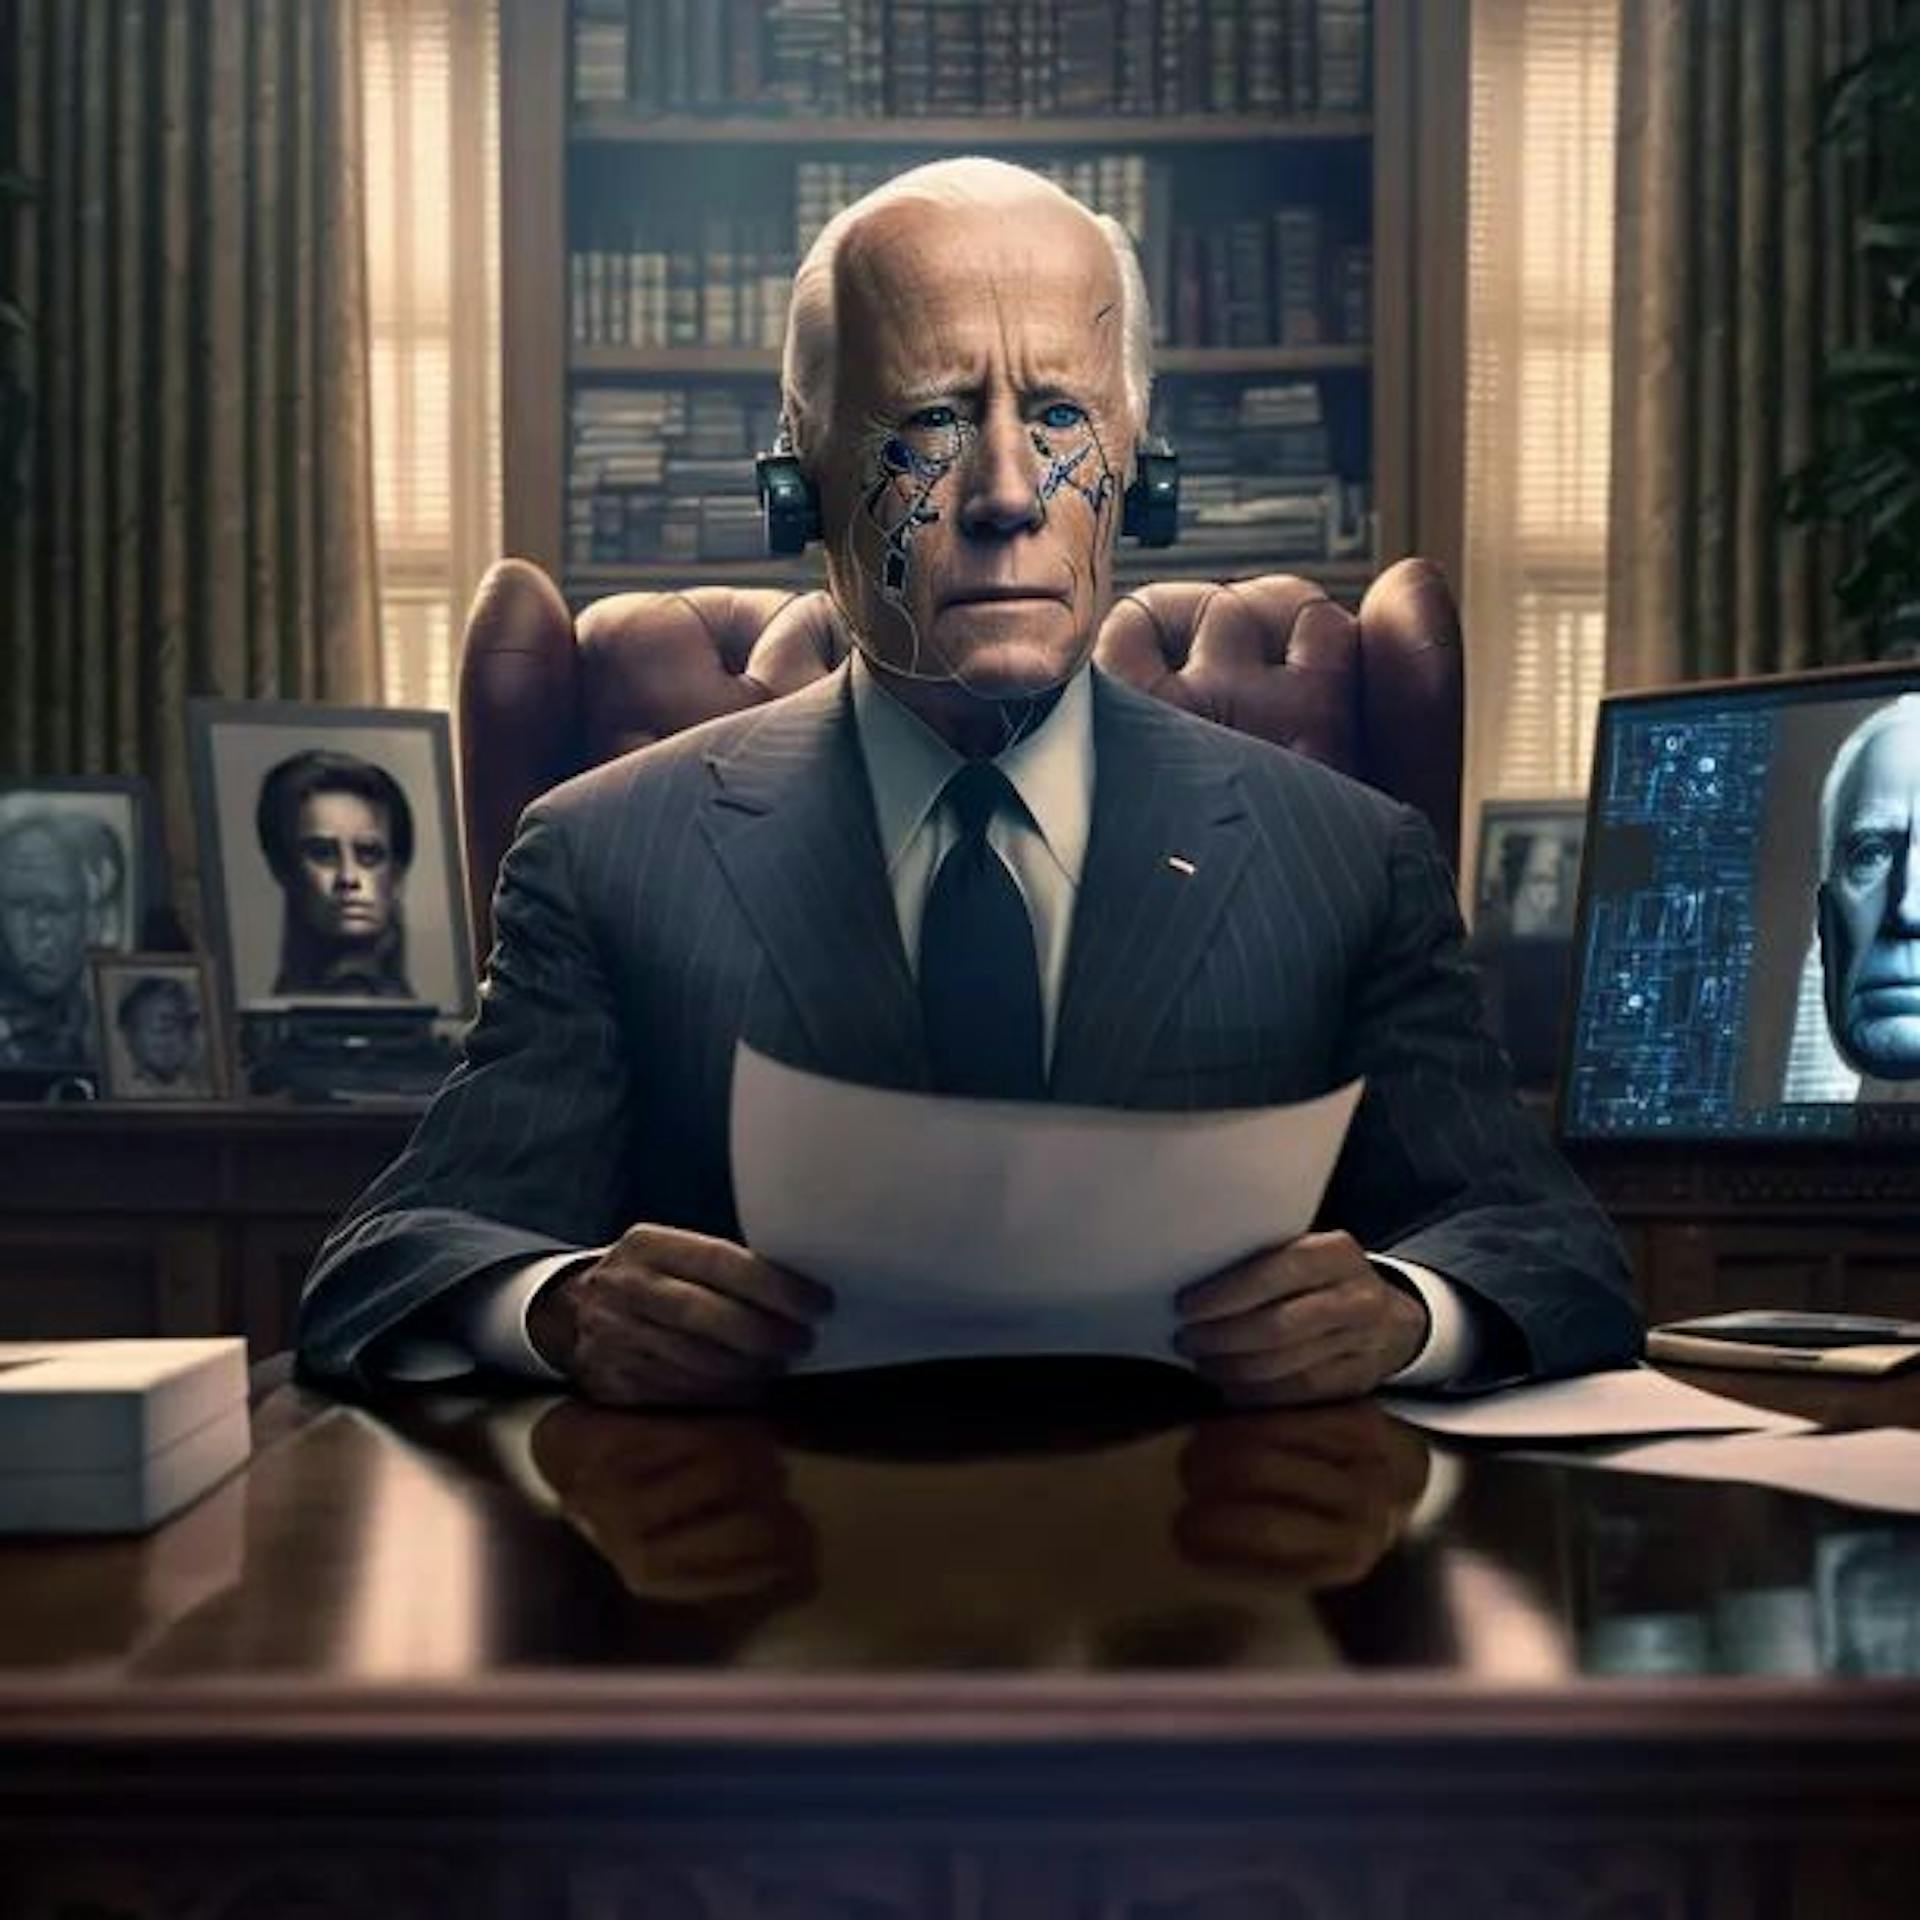 Invite de mi-journée : image photoréaliste de Joe Biden dans le bureau ovale à la recherche de conseils politiques auprès d'un programme d'IA omniscient.